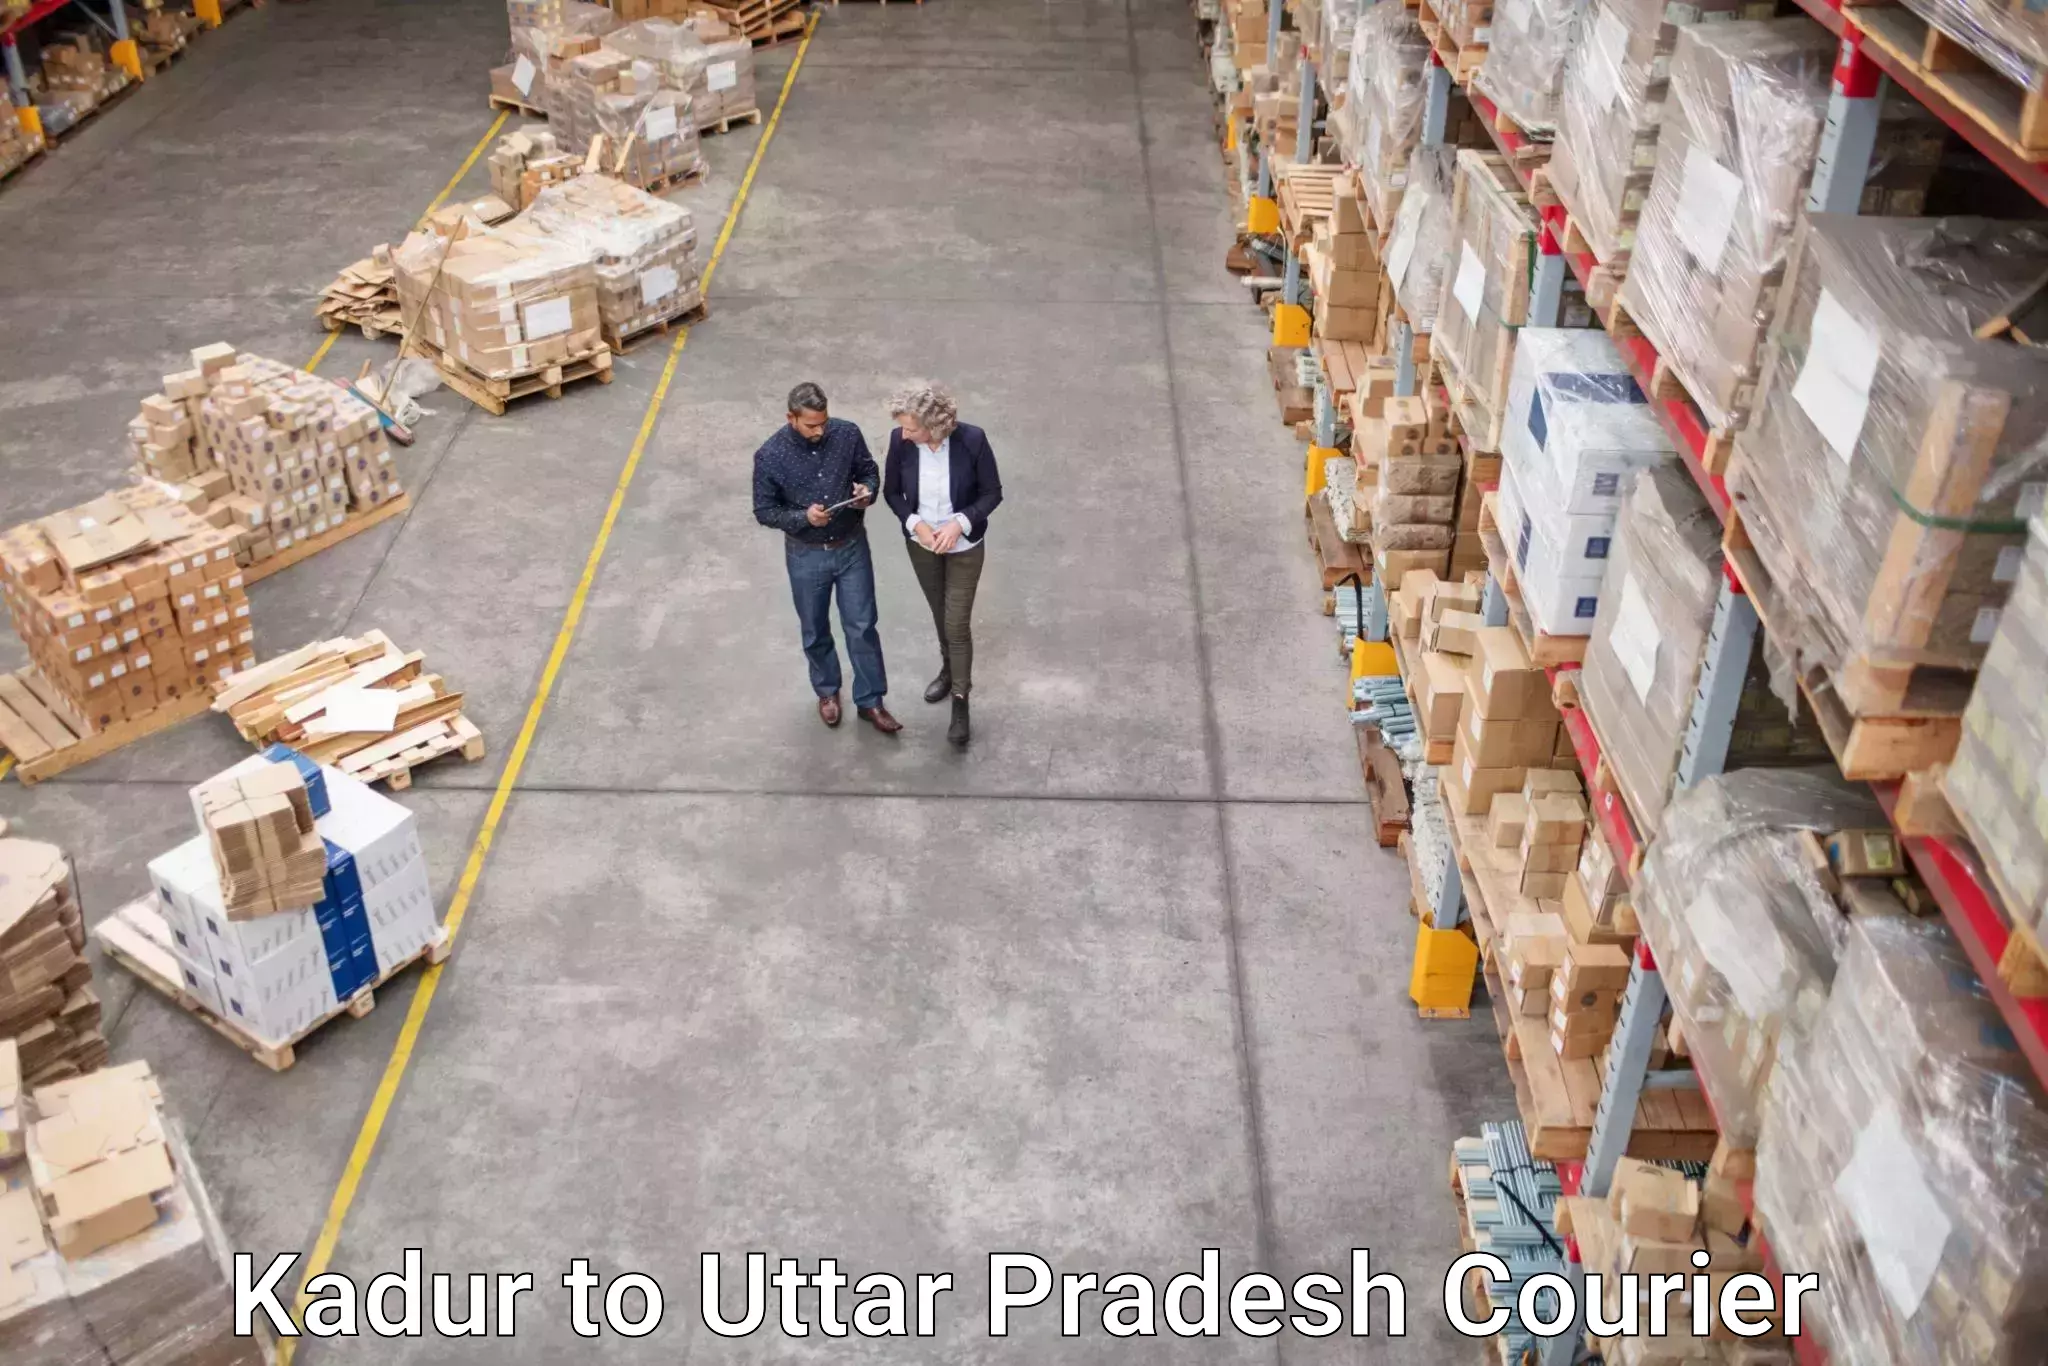 Full-service courier options Kadur to Mahasi